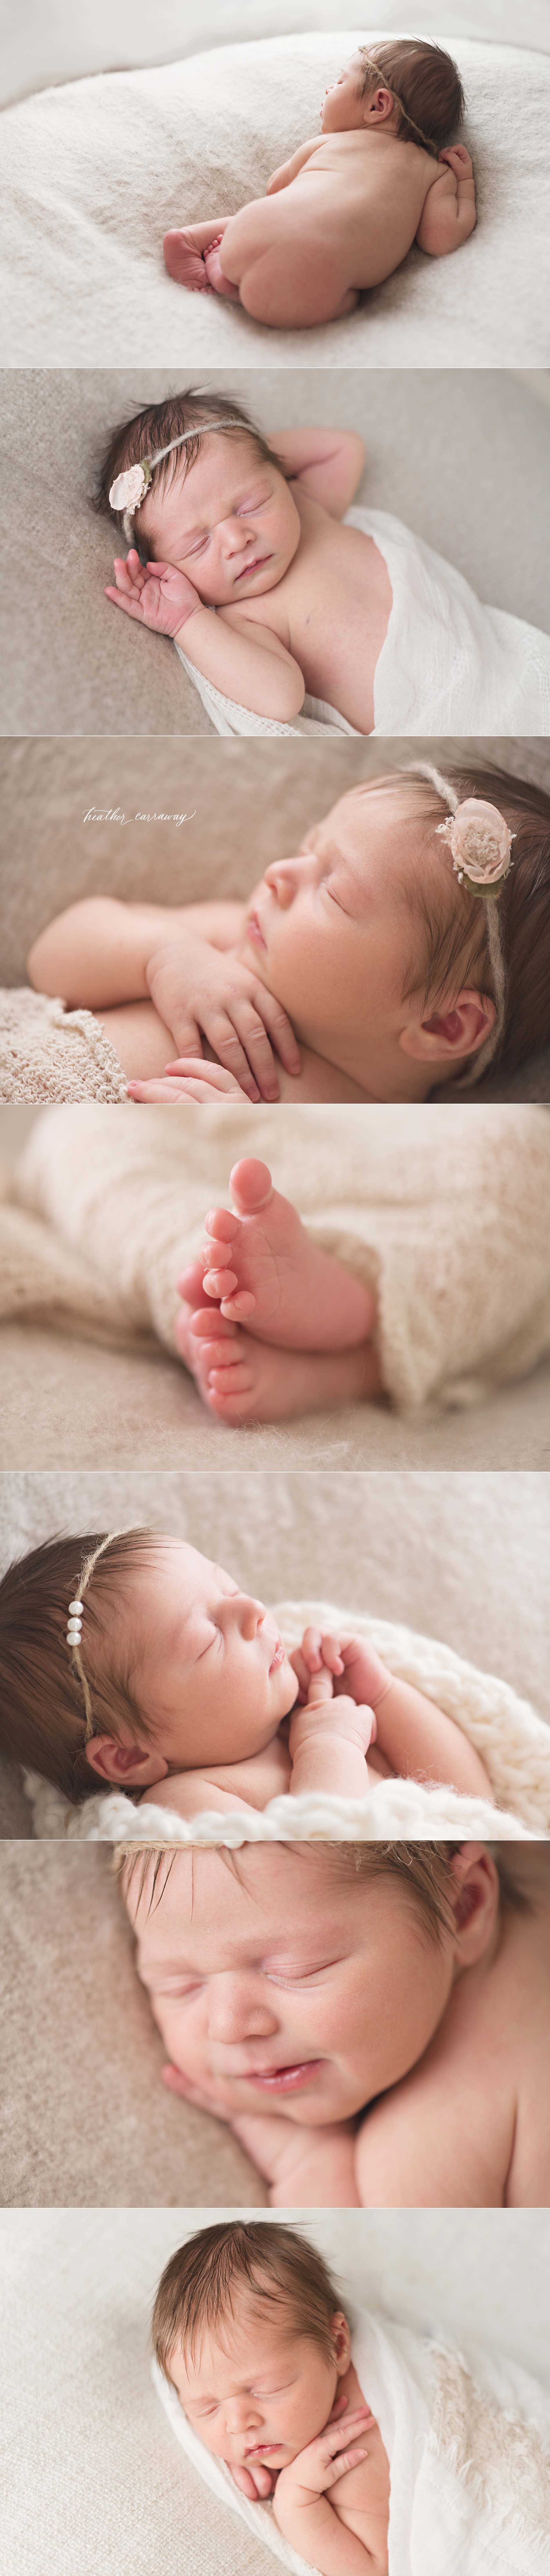 natural newborn photos atlanta, unposed newborns, macro newborn photography, organic newborn photos